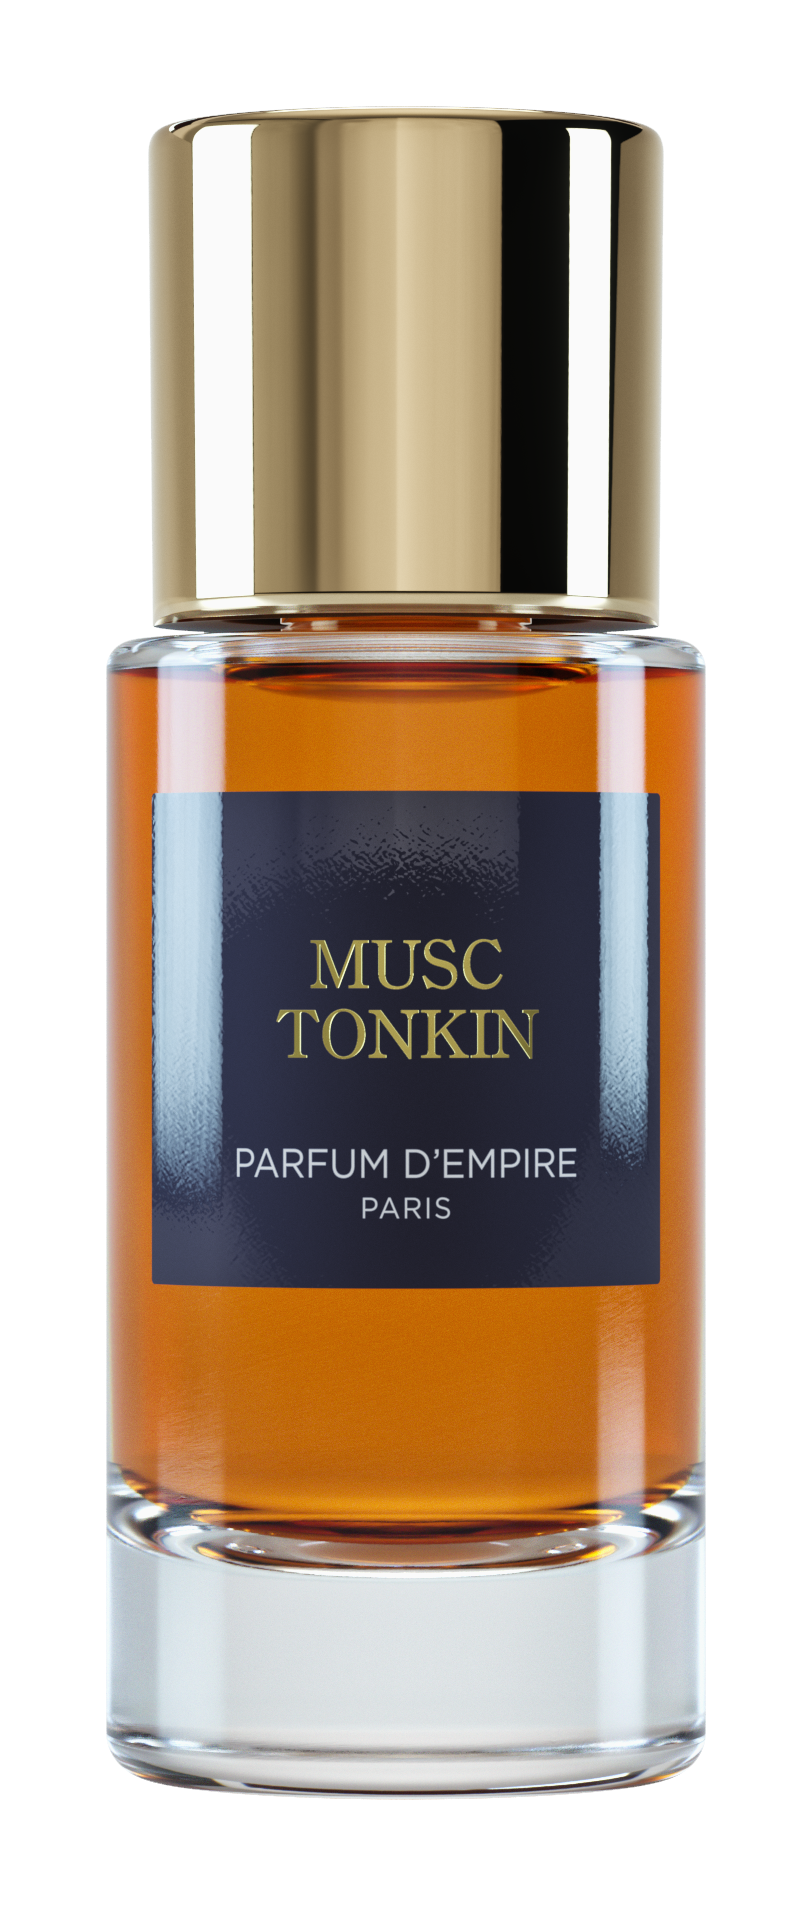 Extrait de Parfum MUSC TONKIN